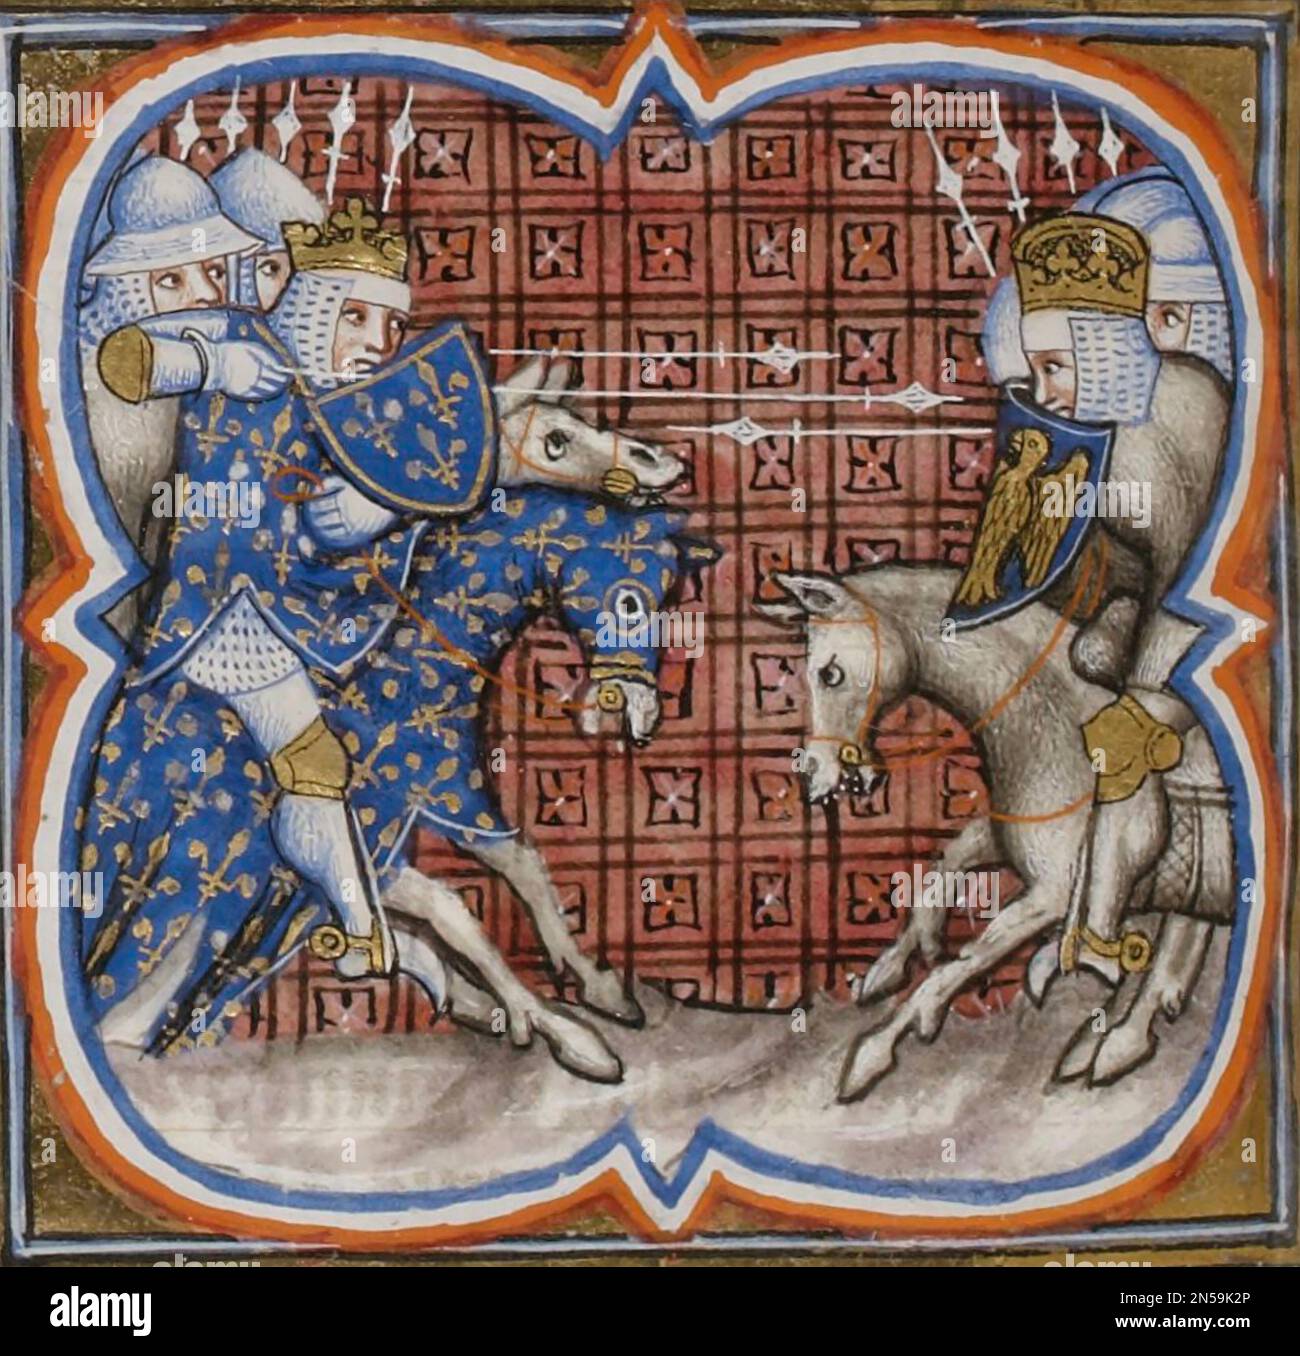 BATTAGLIA DI BOUVINES 27 luglio 1214 nelle Fiandre, ha provocato una sconfitta per il re Giovanni d'Inghilterra, la cui cavalleria è mostrata a destra. Foto Stock